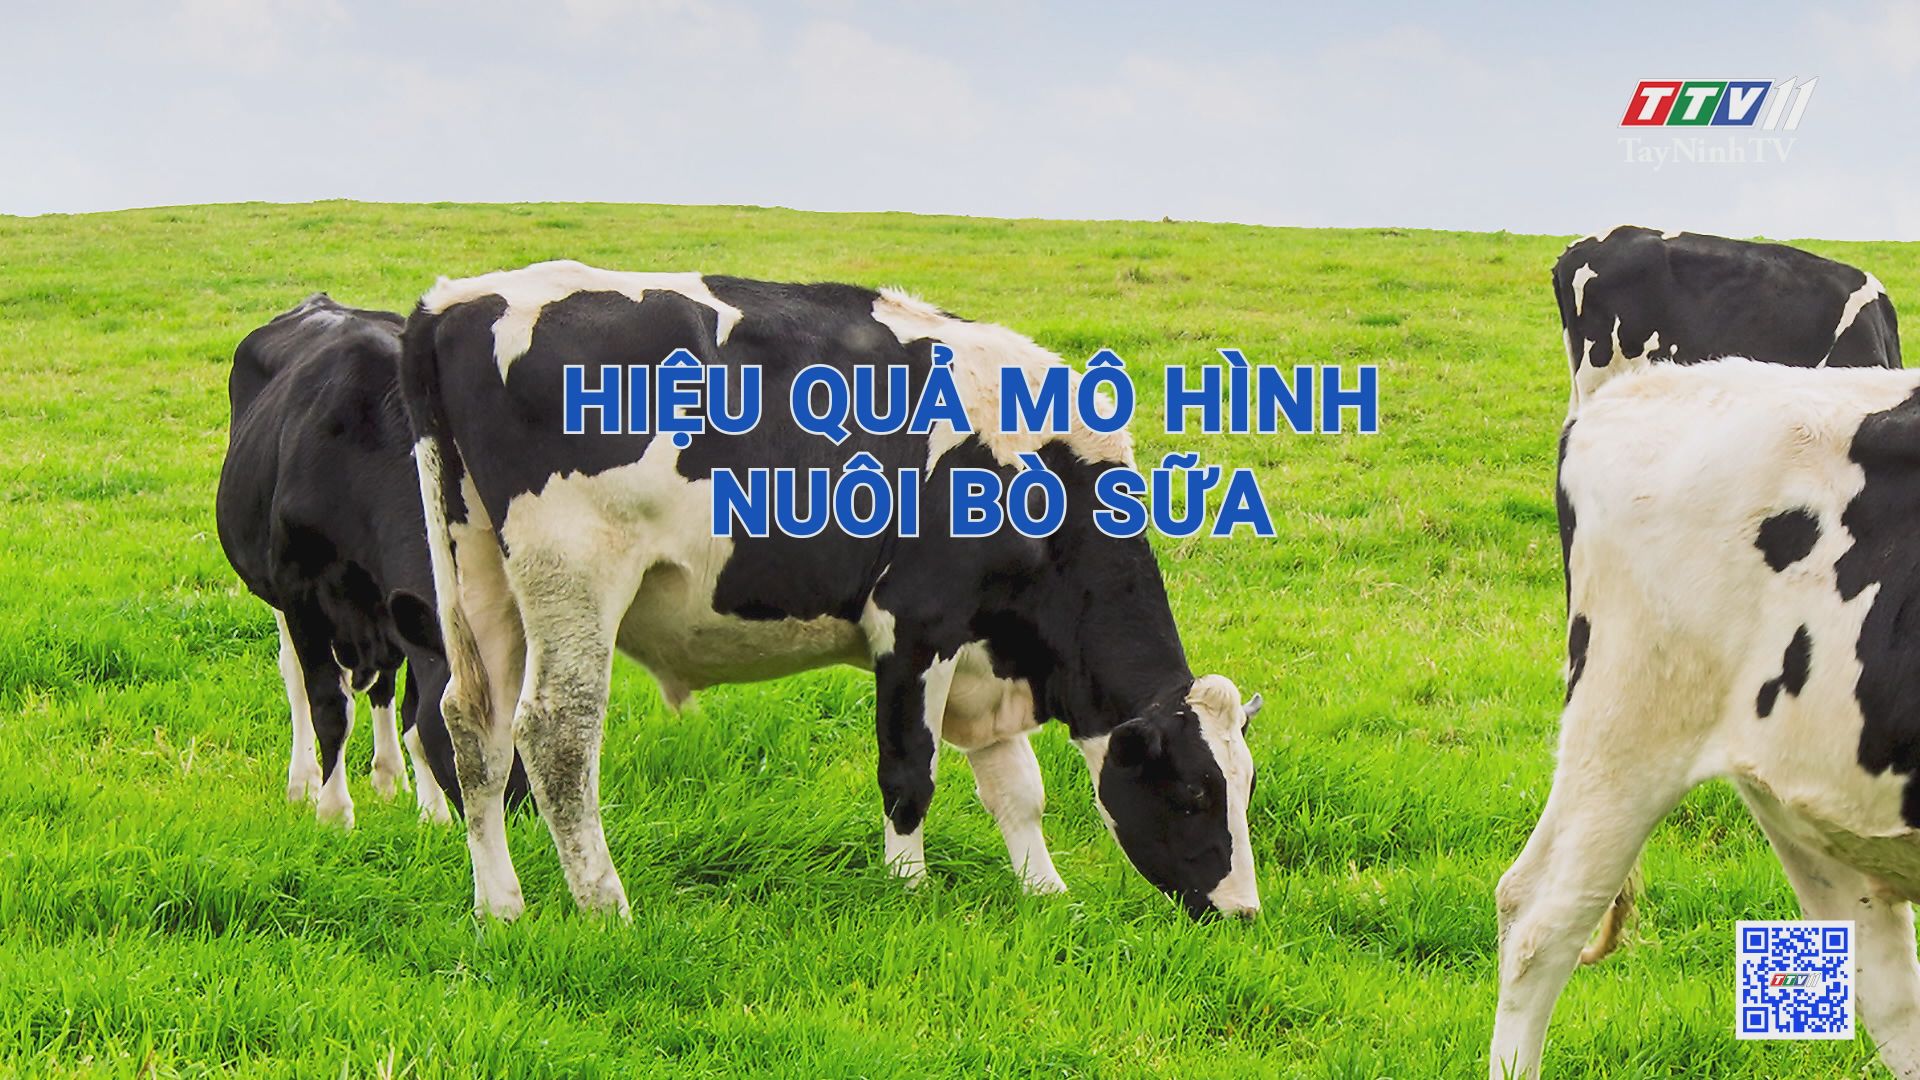 Hiệu quả mô hình nuôi bò sữa | Nông nghiệp Tây Ninh | TayNinhTV